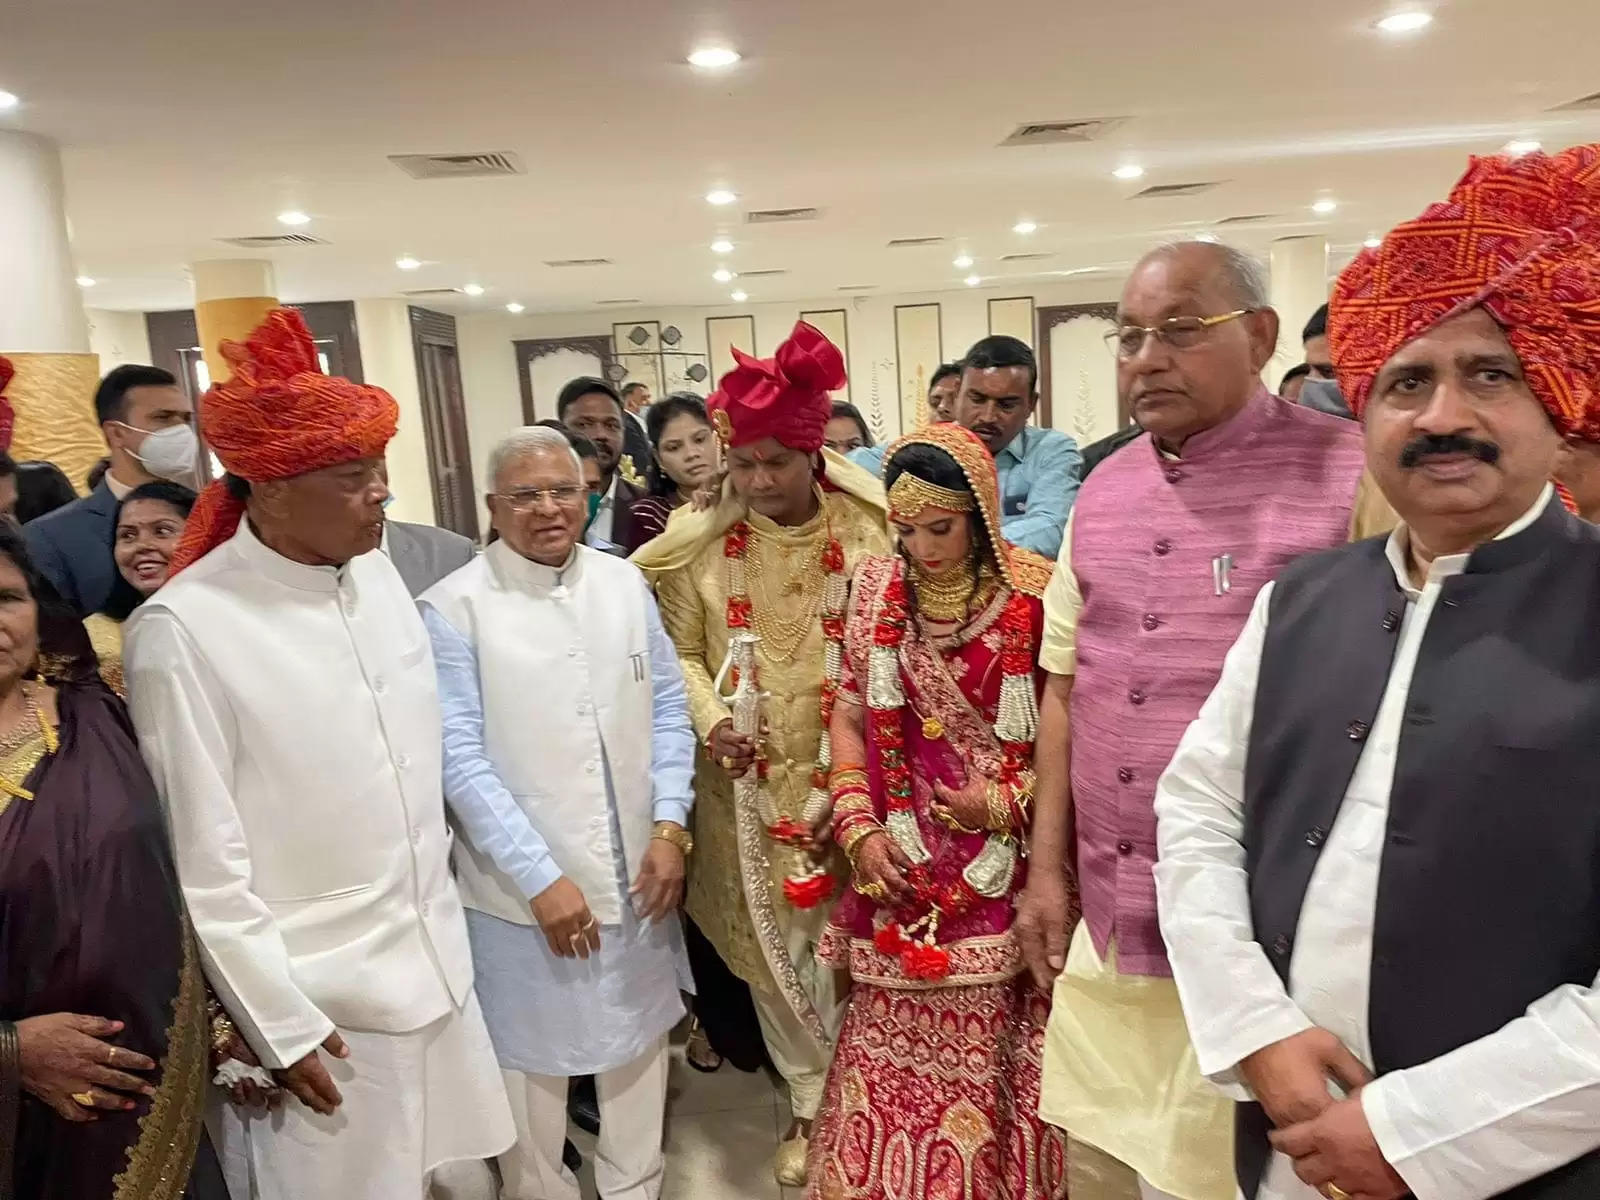 खाद्य मंत्री बिसाहूलाल सिंह के पुत्र के विवाह समारोह में राज्यपाल, मुख्यमंत्री और विधानसभा अध्यक्ष सहित कई गणमान्य हुये शामिल